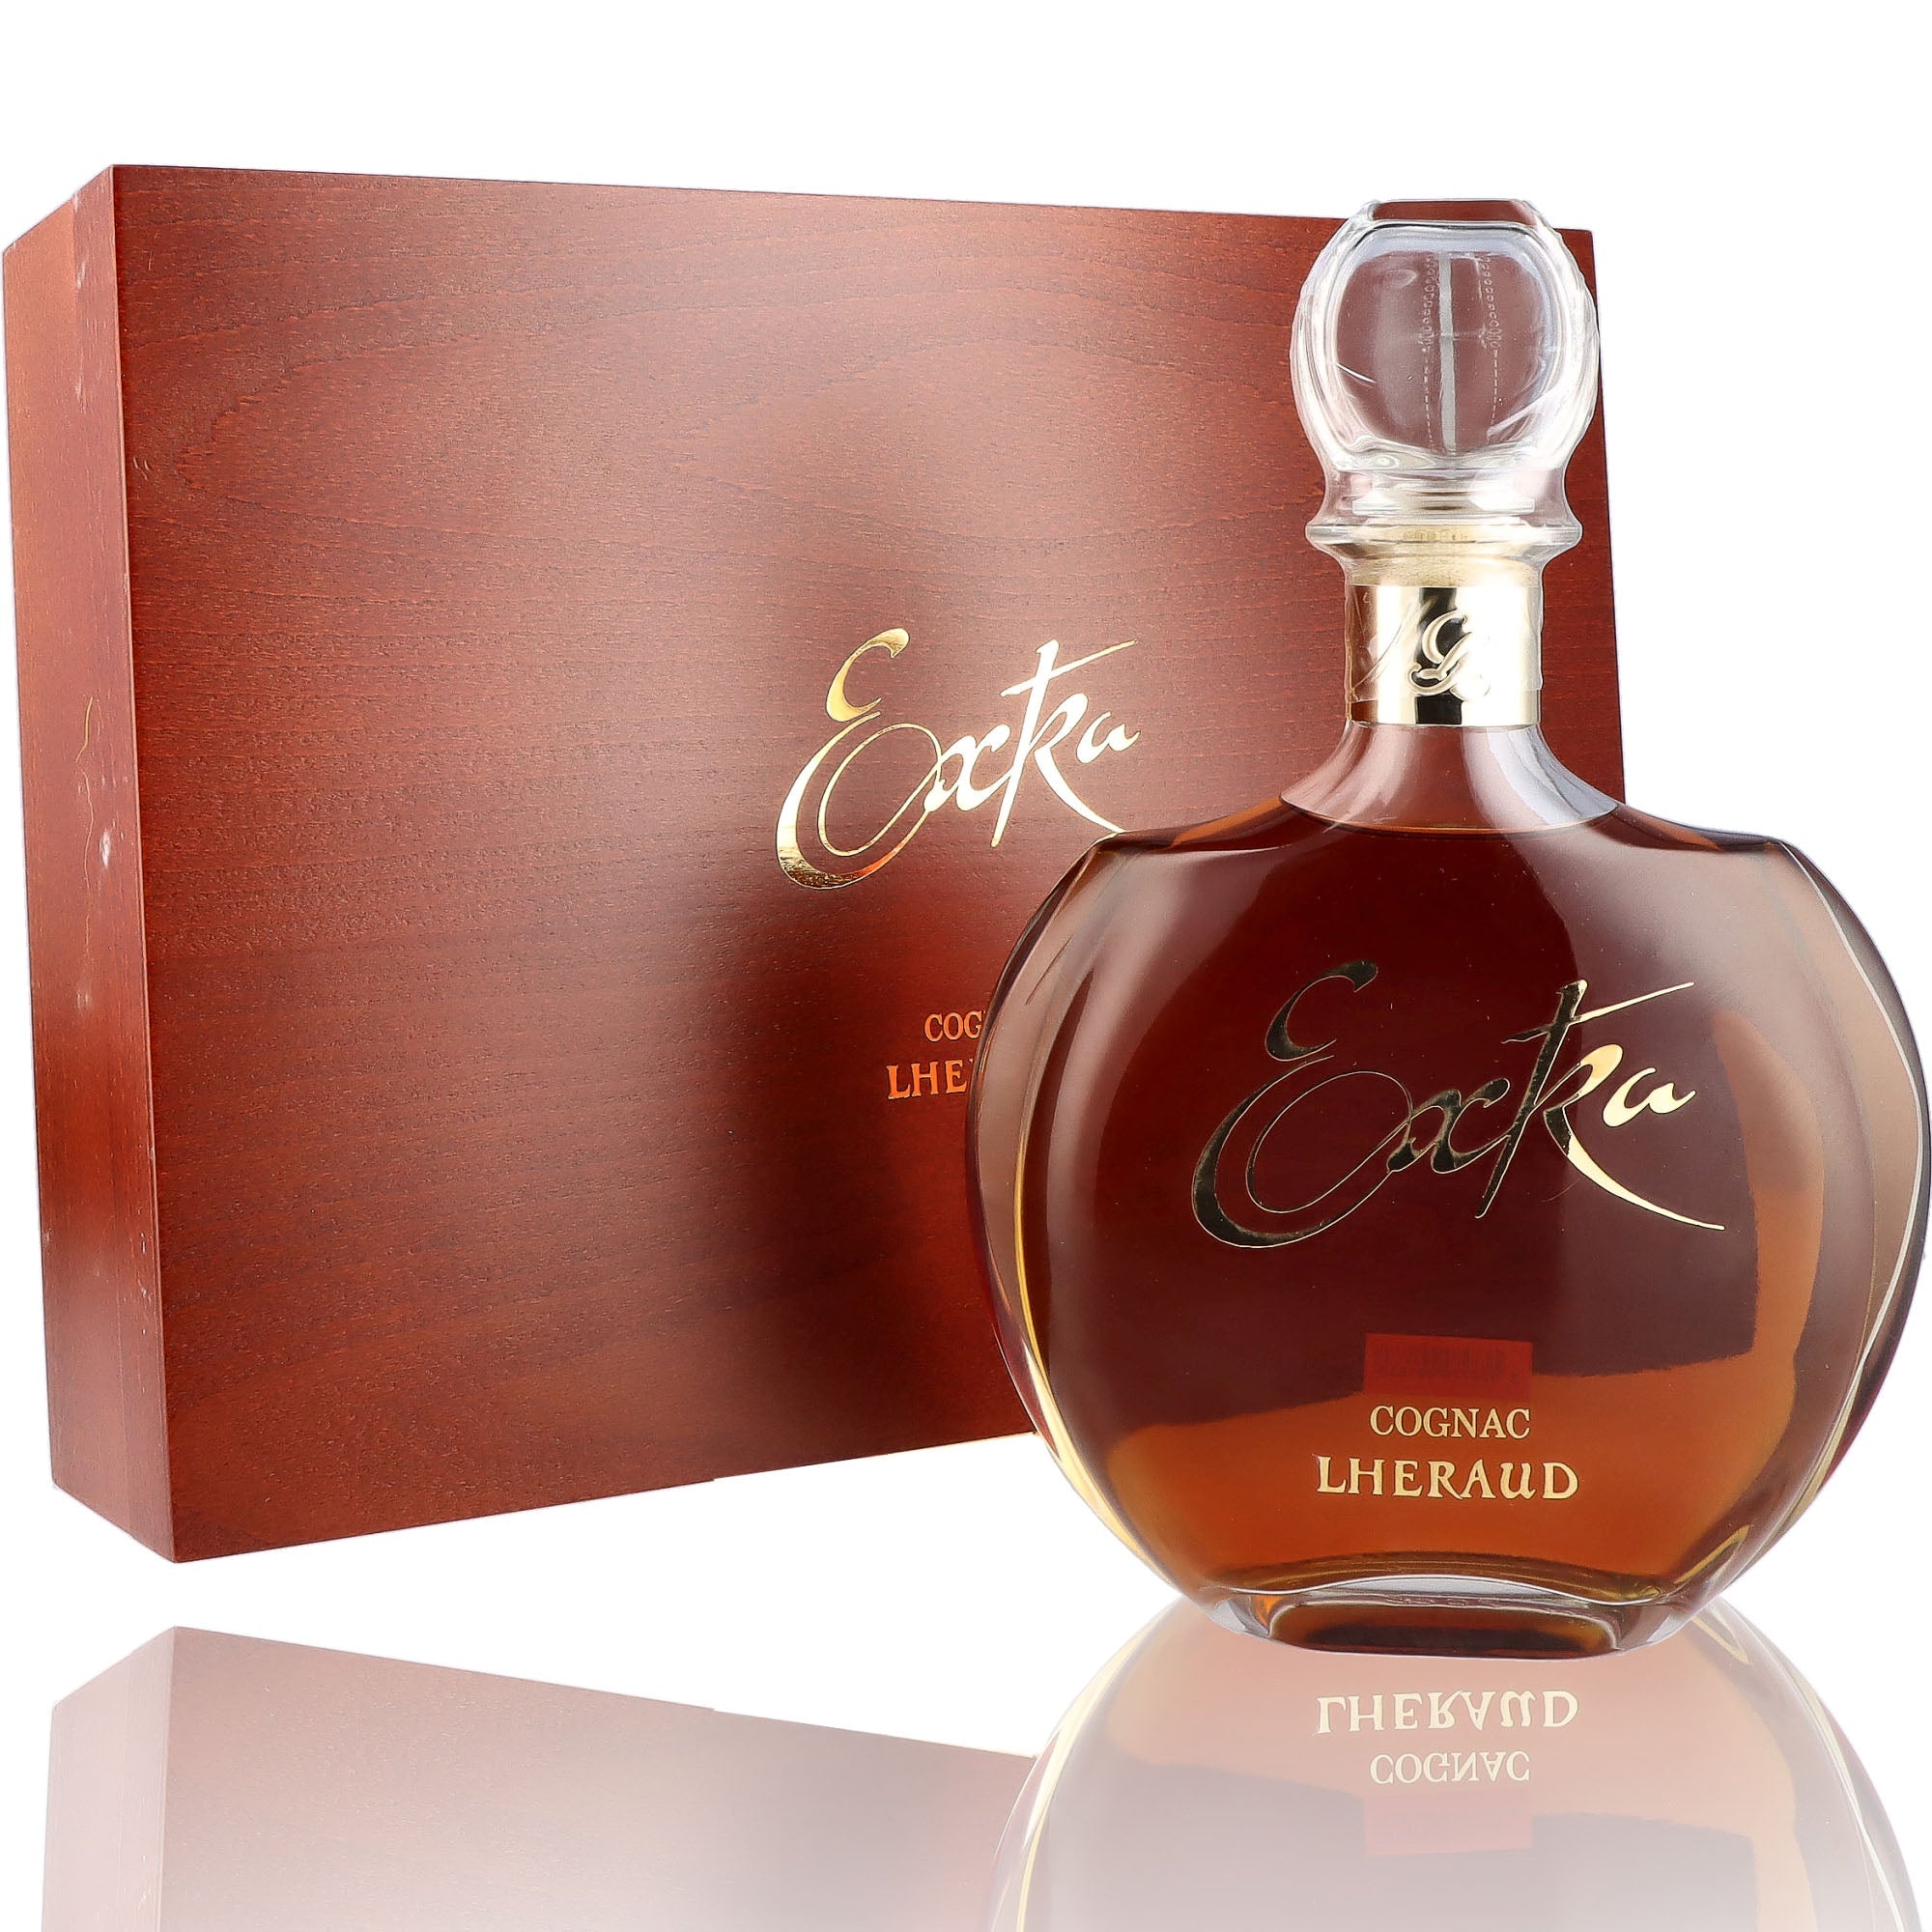 Une bouteille de Cognac, de la marque Lheraud, nommée Extra.